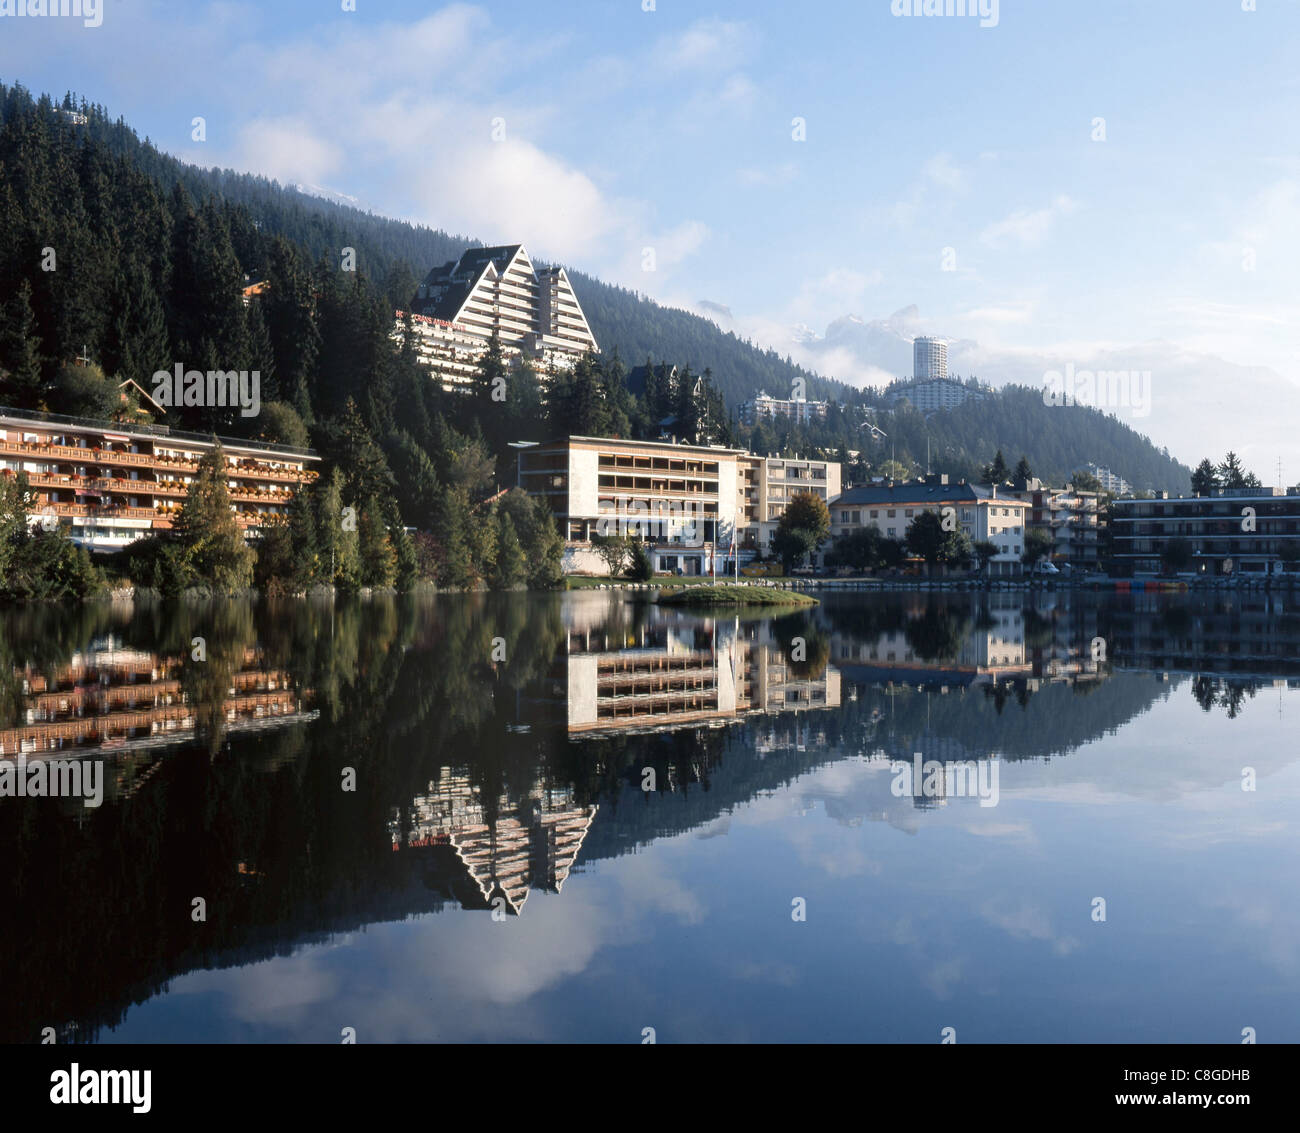 La Svizzera, Europa, Vallese, Crans Montana, turismo, Lac Grenon, lago, estate, hotel, legno, foresta, riflessione Foto Stock